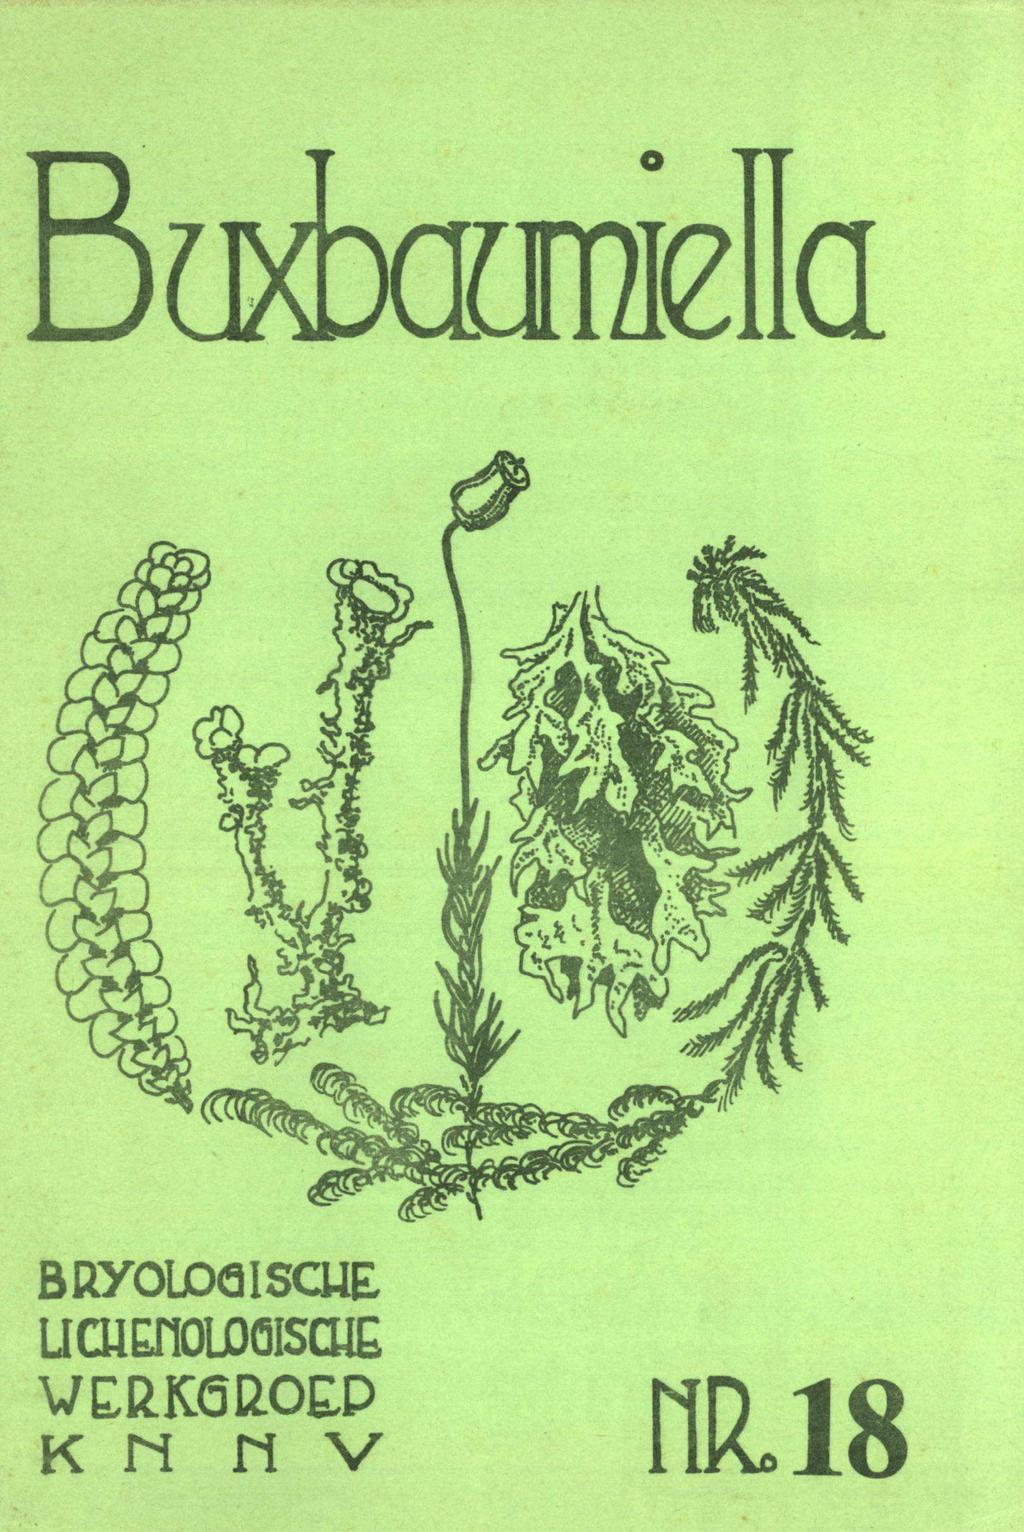 Buxbaumiella BRyOlDöISCUE